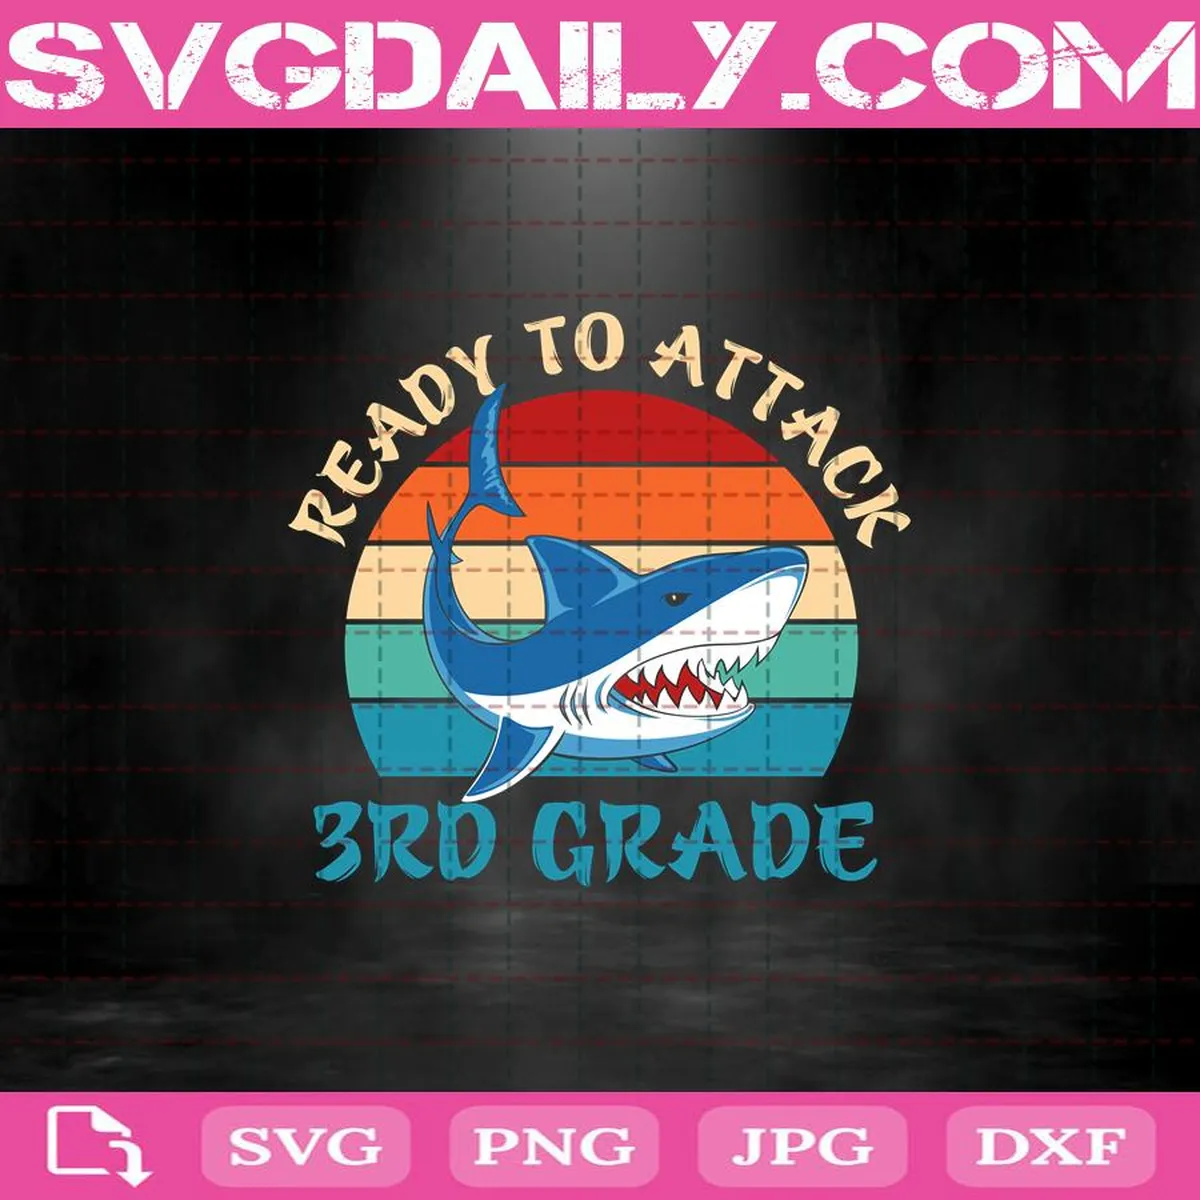 Ready To Attack 3rd Grade Svg, 3rd Grade Svg, Shark 3rd Grade Svg, Shark Back To School Svg, Back To School Svg